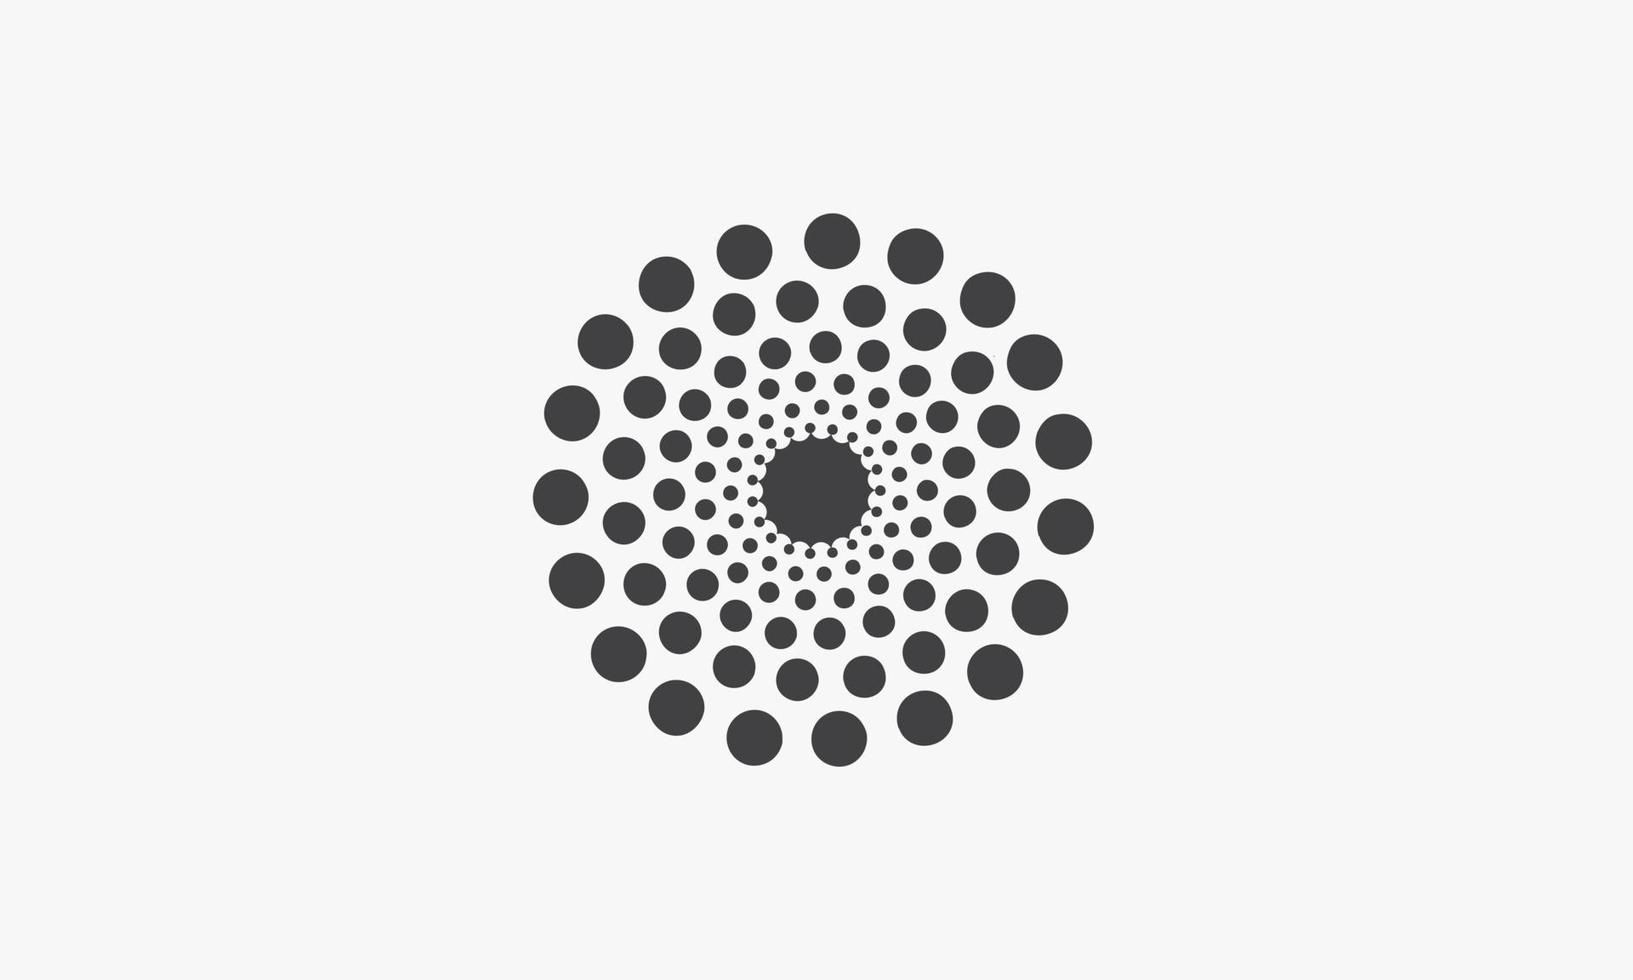 illustrazione vettoriale punteggiata a spirale su sfondo bianco. icona creativa.